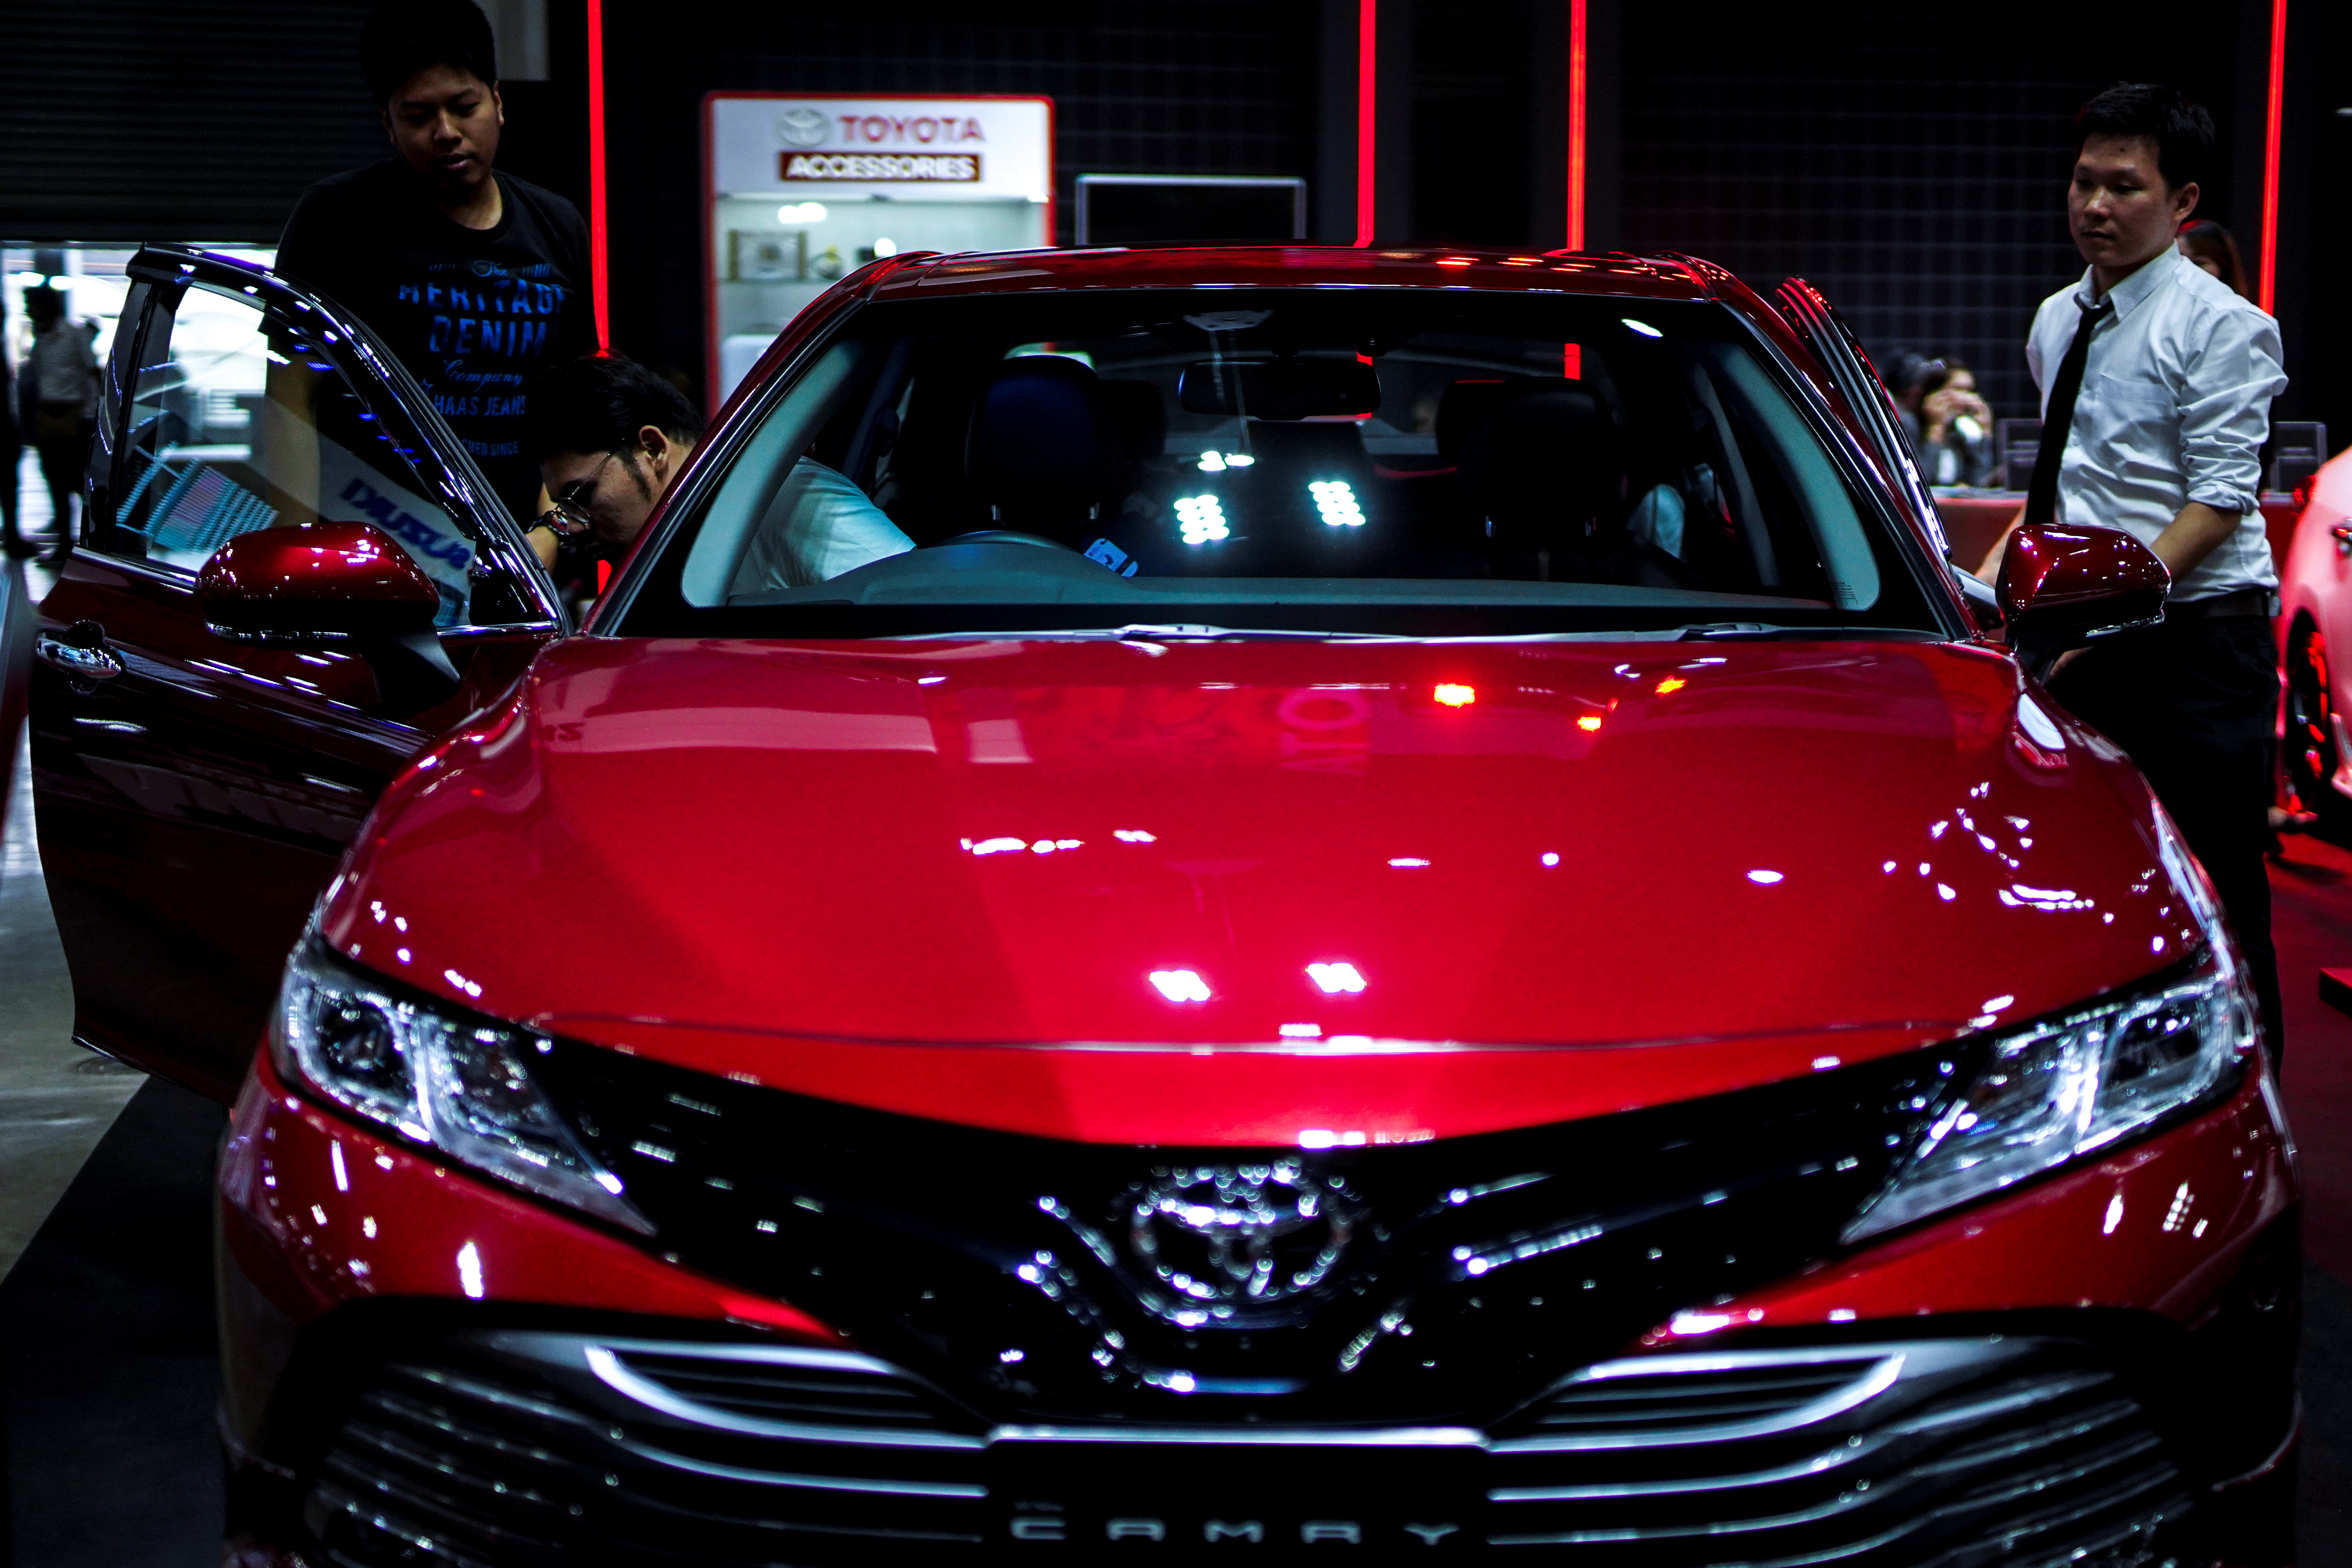 Besucher betrachten einen Toyota Camry während des Bangkok Auto Salon 2019 in Bangkok